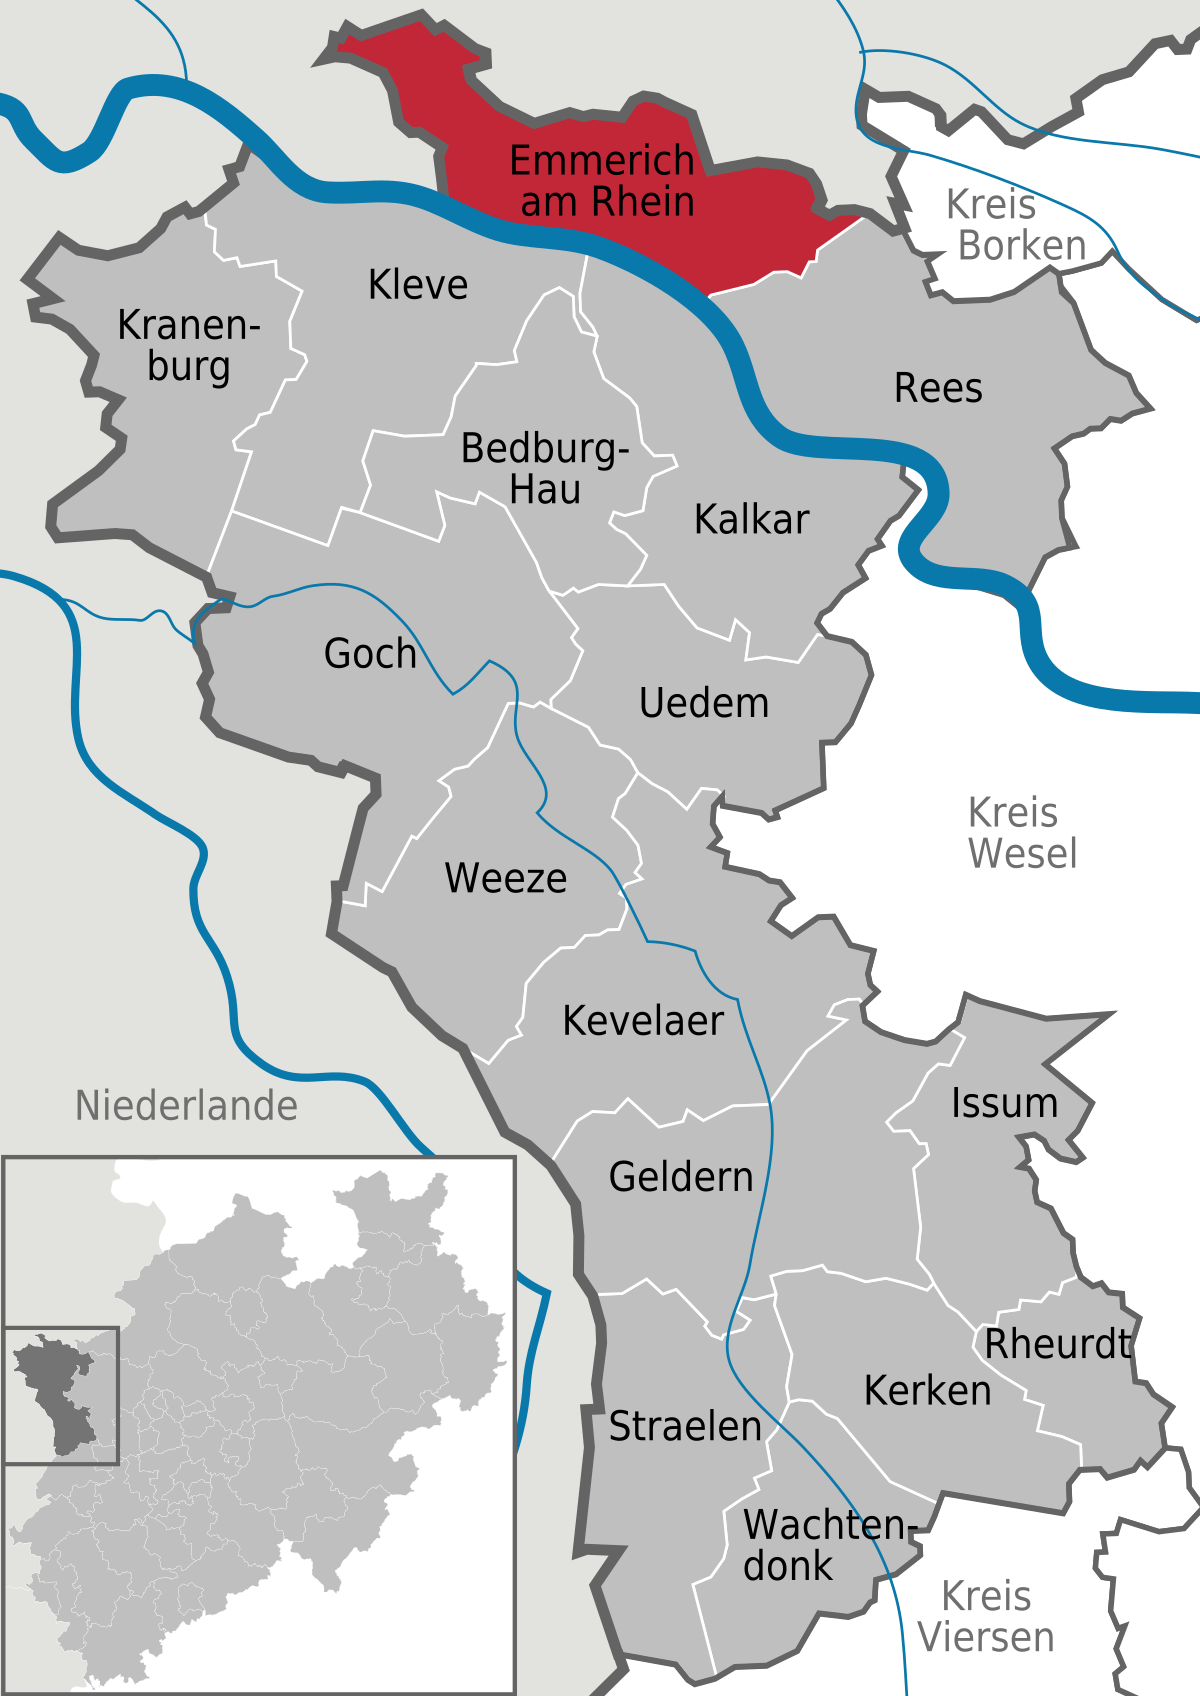 Emmerich am Rhein - Wikipedia